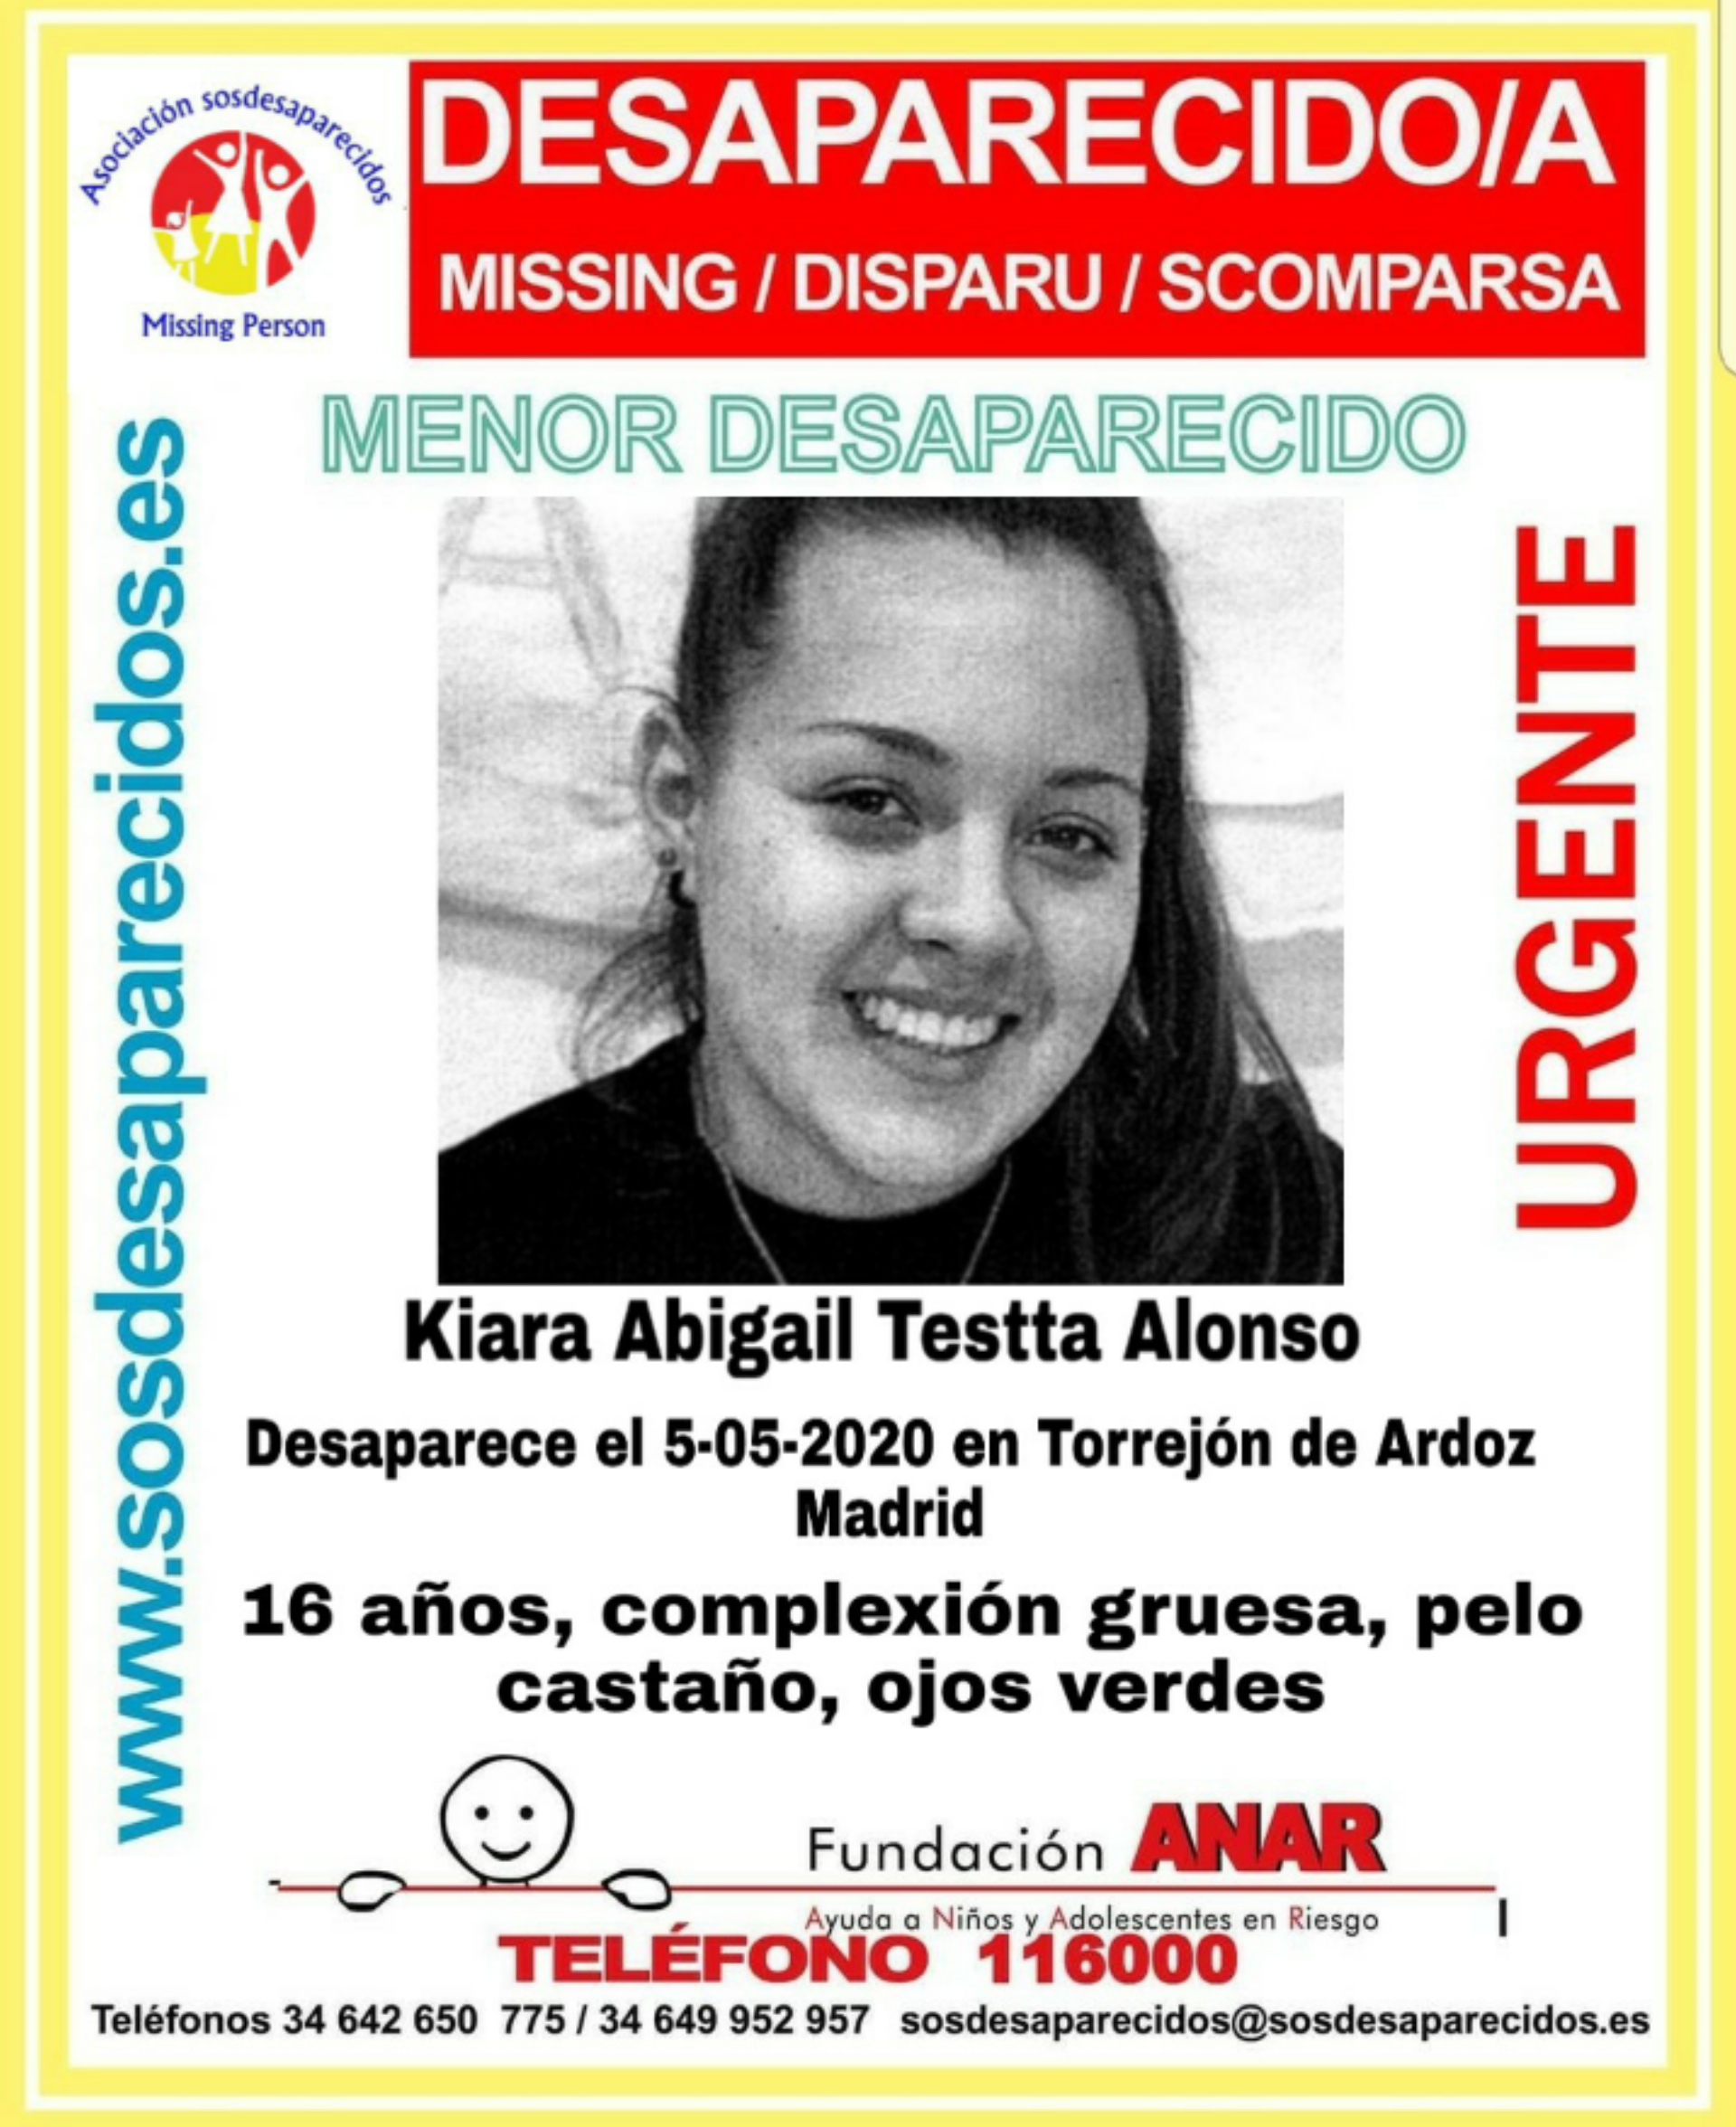 URGENTE| Desaparecida una menor de 16 años